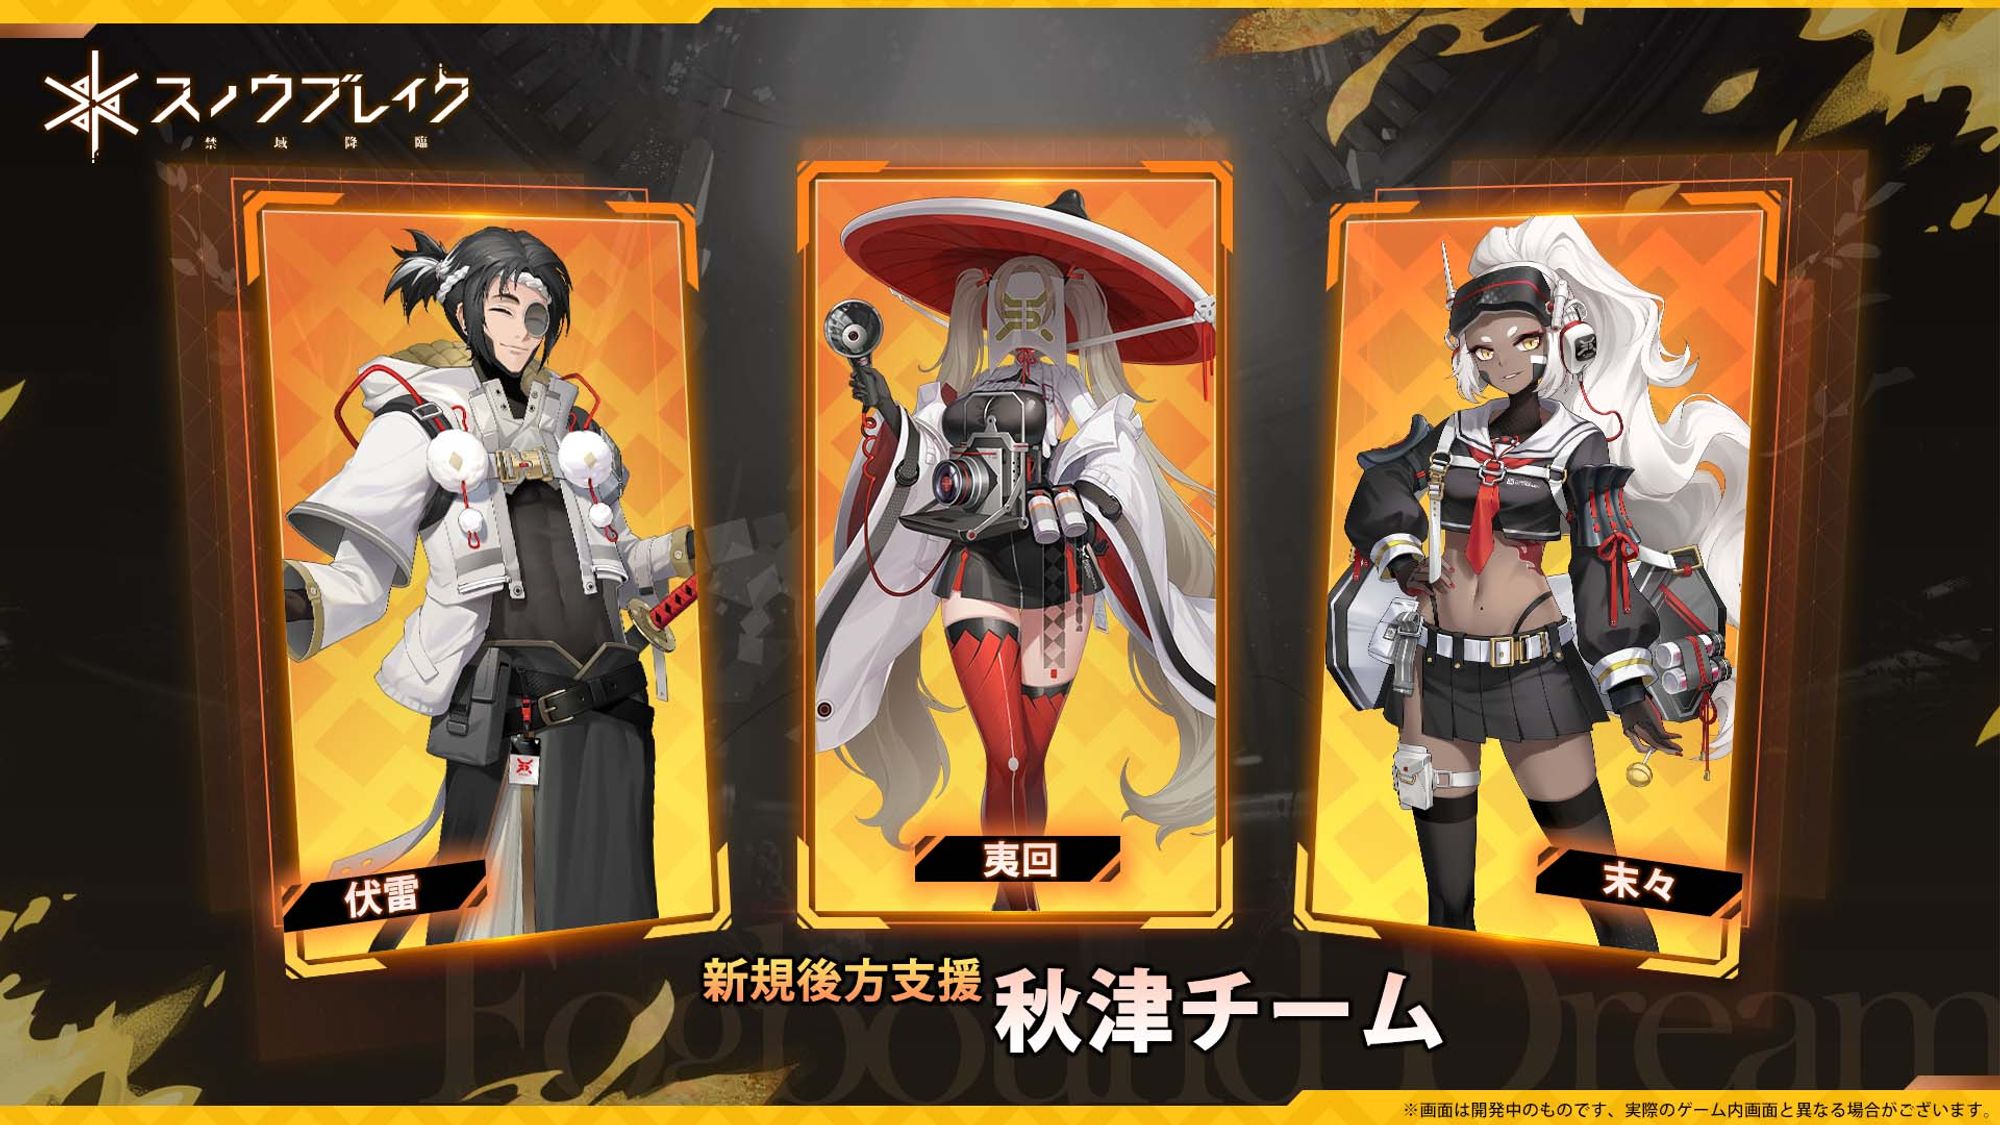 Akitsu Squad Details